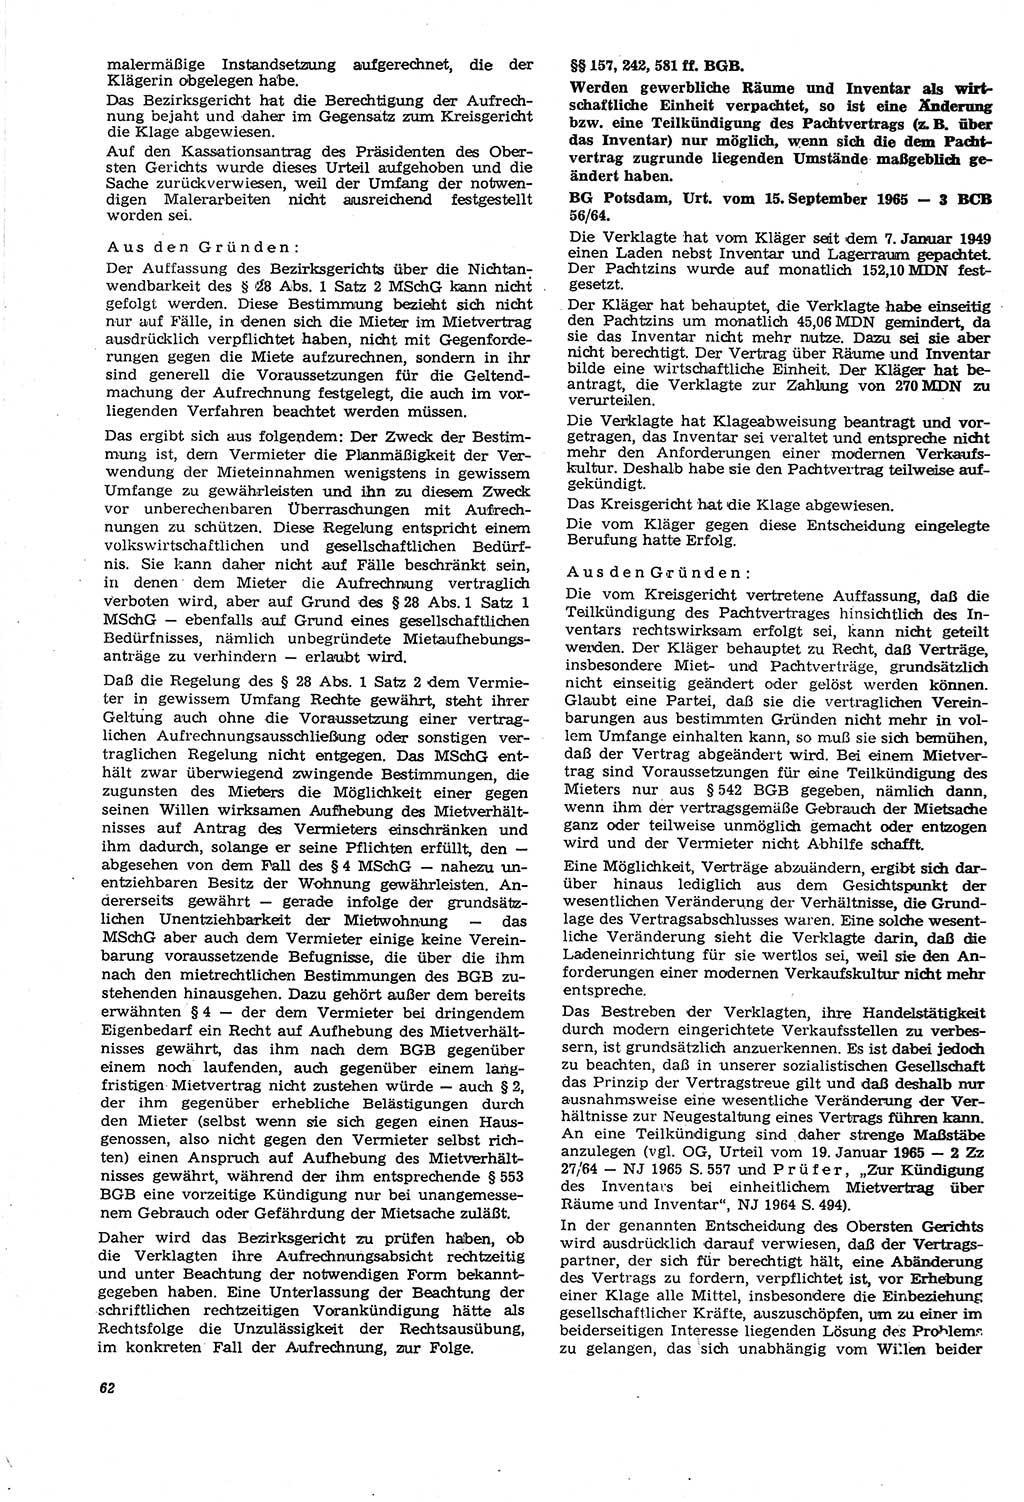 Neue Justiz (NJ), Zeitschrift für Recht und Rechtswissenschaft [Deutsche Demokratische Republik (DDR)], 21. Jahrgang 1967, Seite 62 (NJ DDR 1967, S. 62)